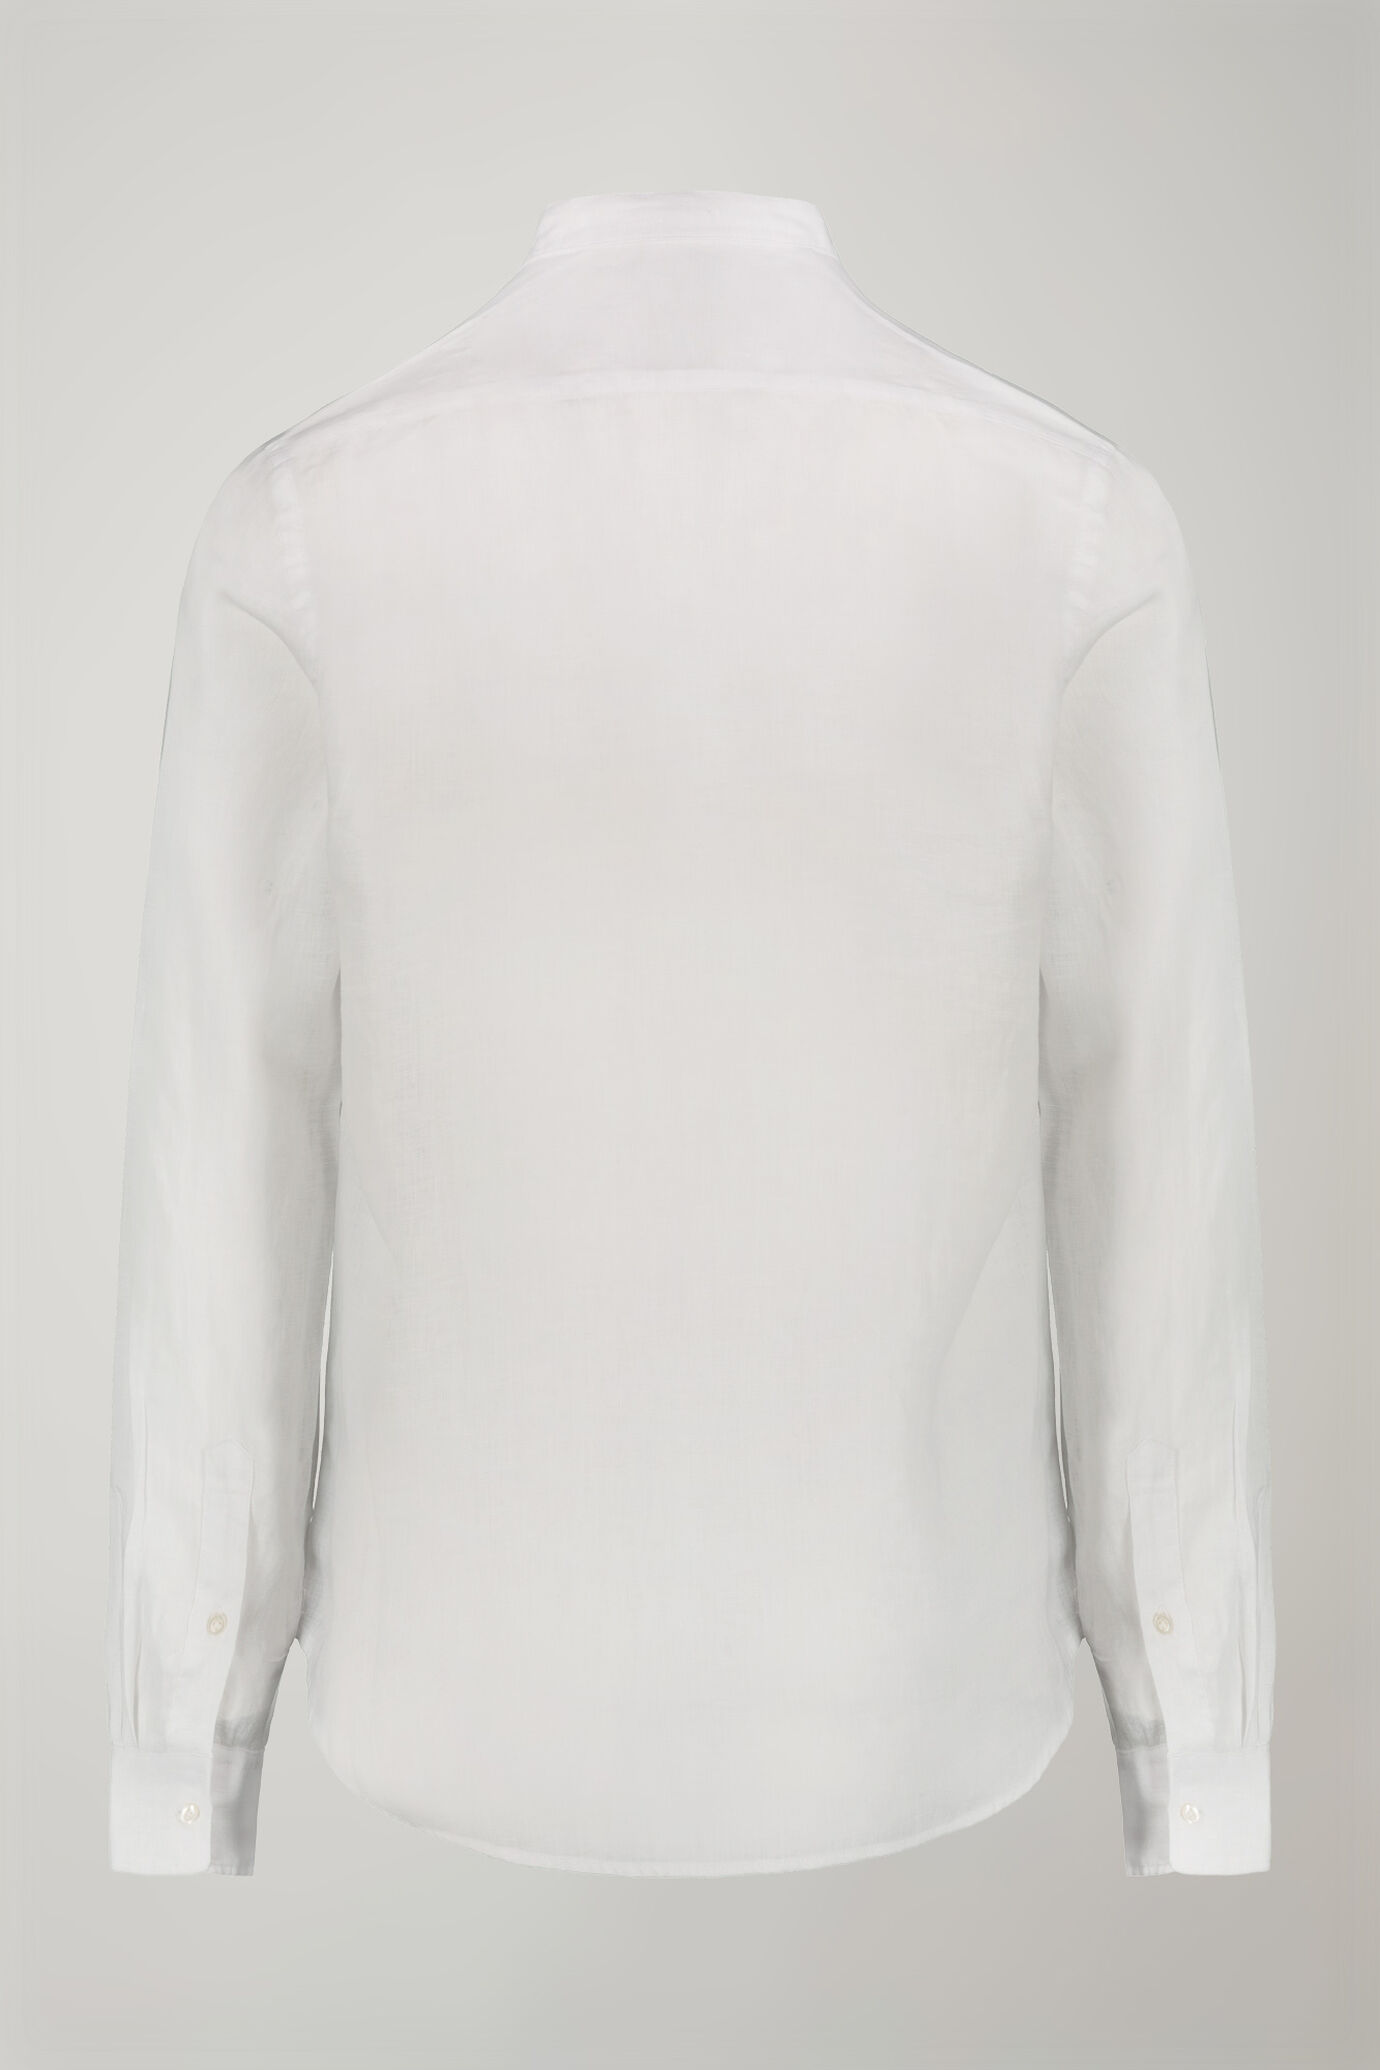 Camicia casual uomo collo coreano 100% lino comfort fit image number 5